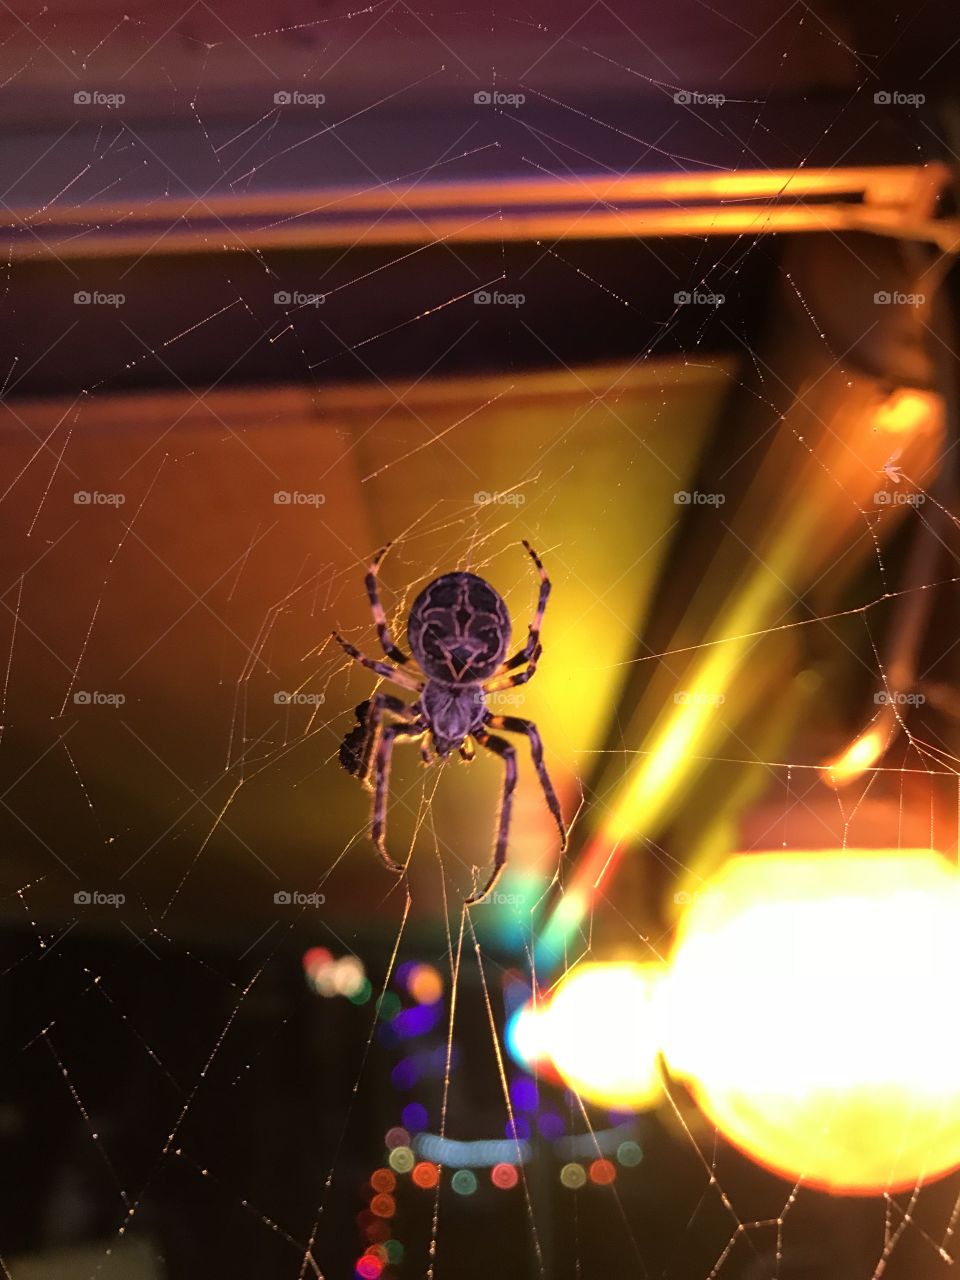 Huge spider on the deck 